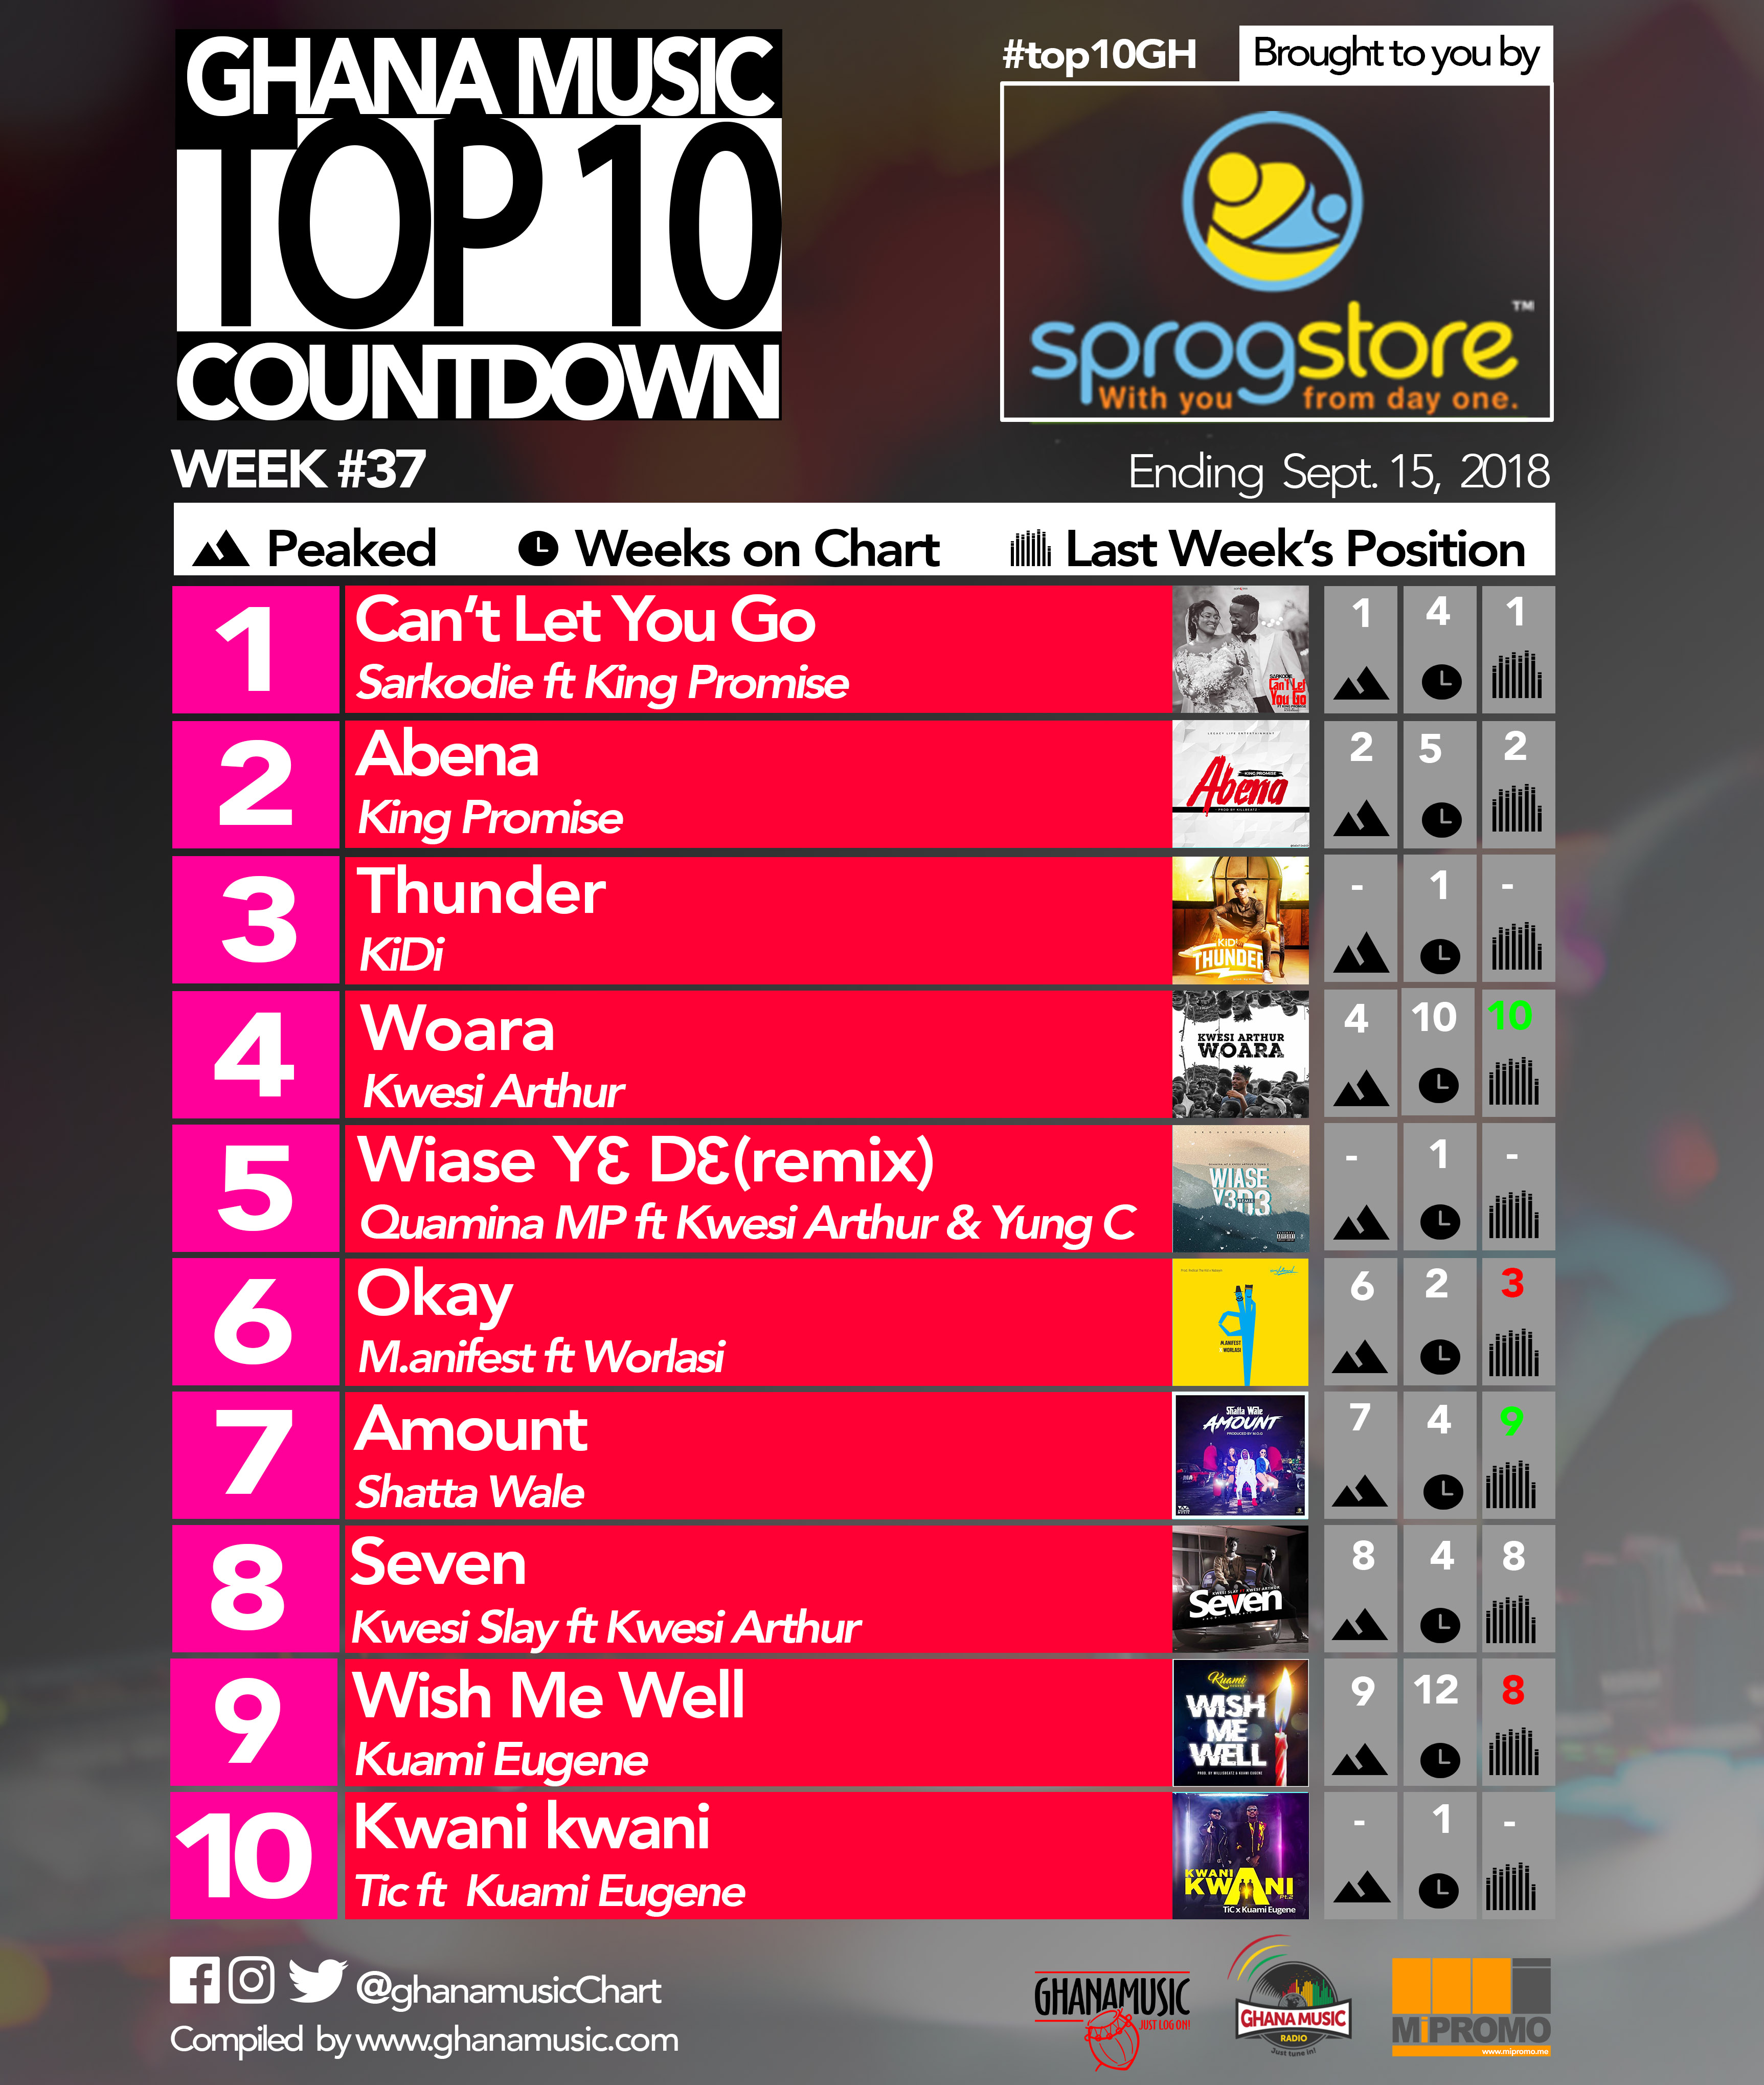 Week #37: Ghana Music Top 10 Countdown